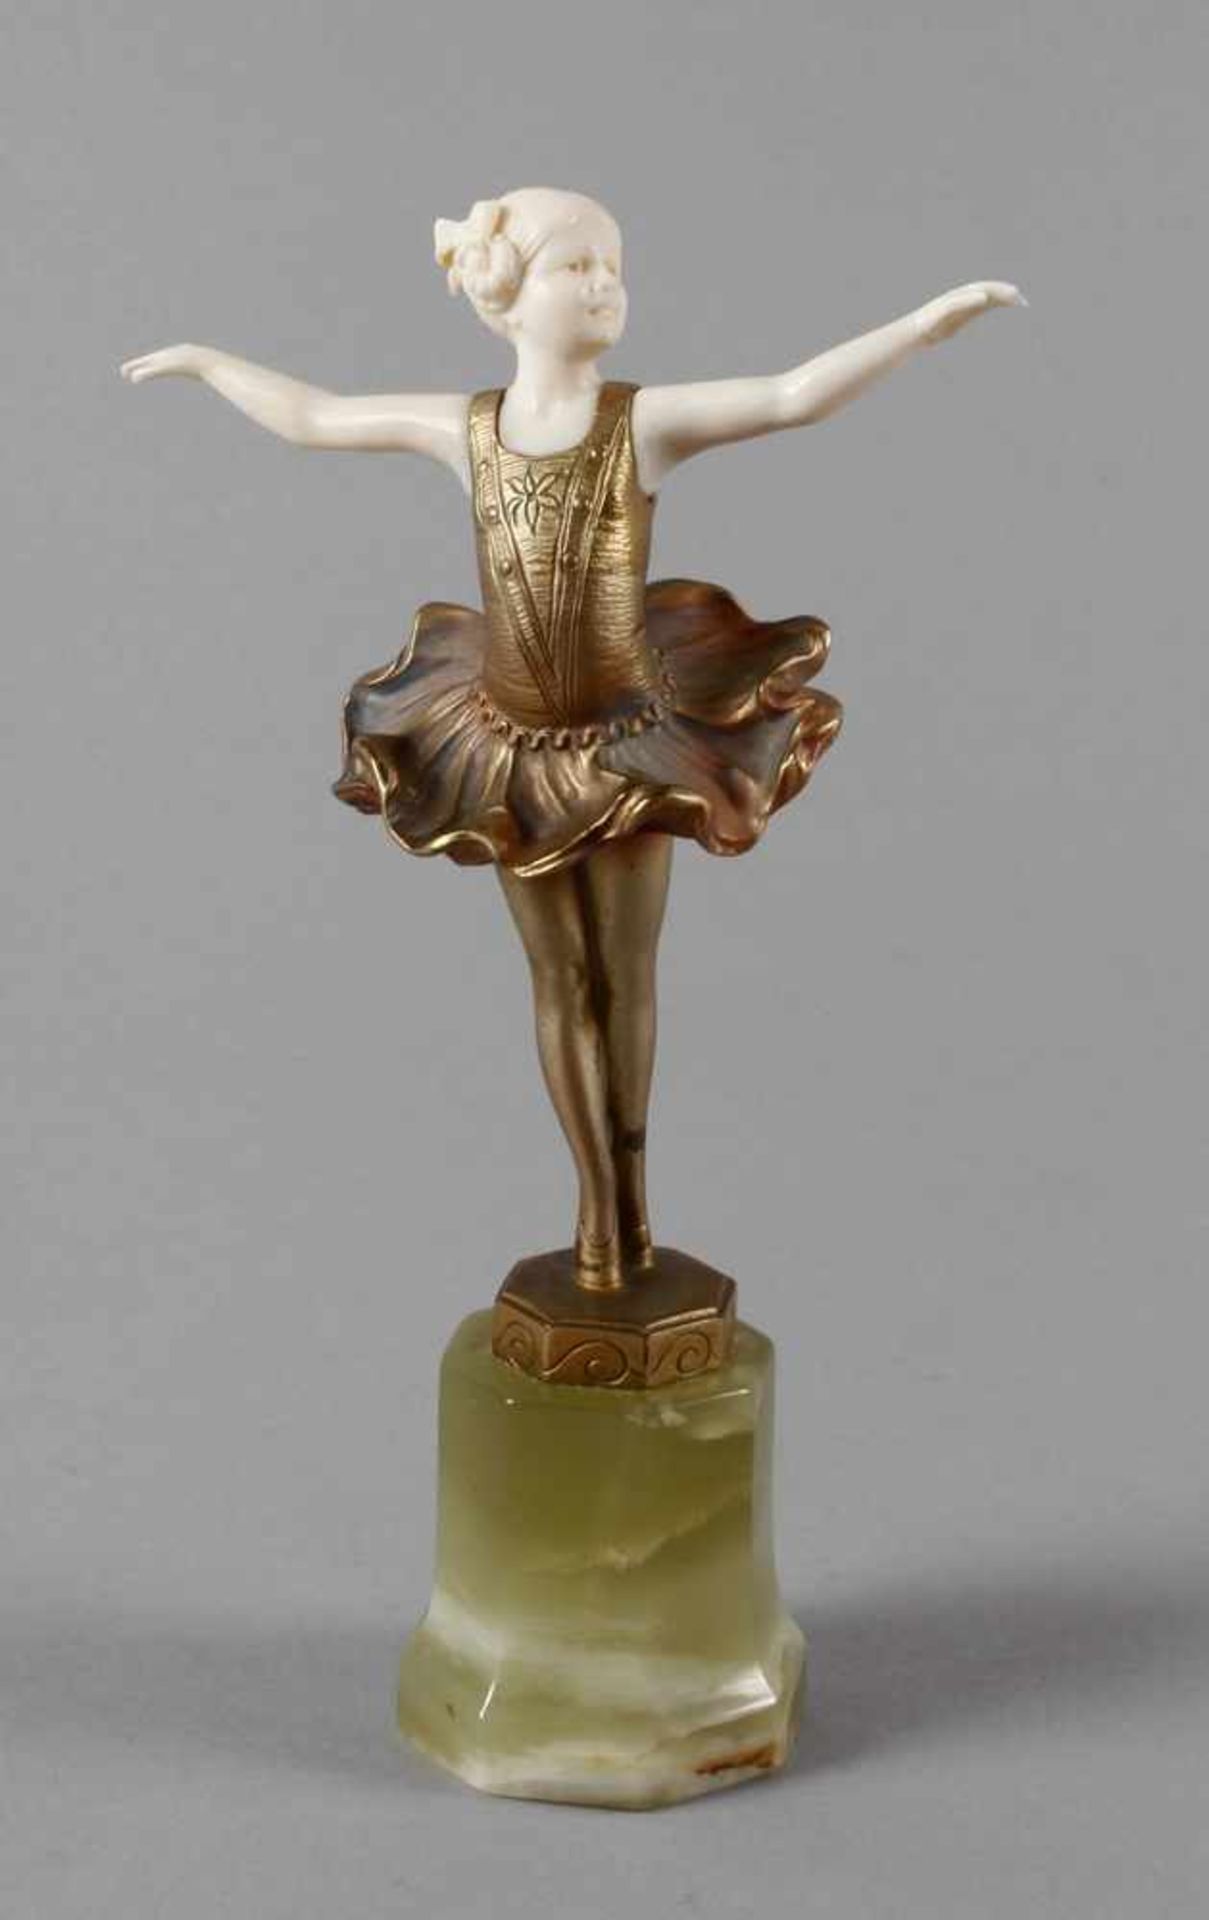 Ferdinand Preiss, Chryselephantin Ballerina1925, Erbach, signiert, Bronze golden und nuanciert